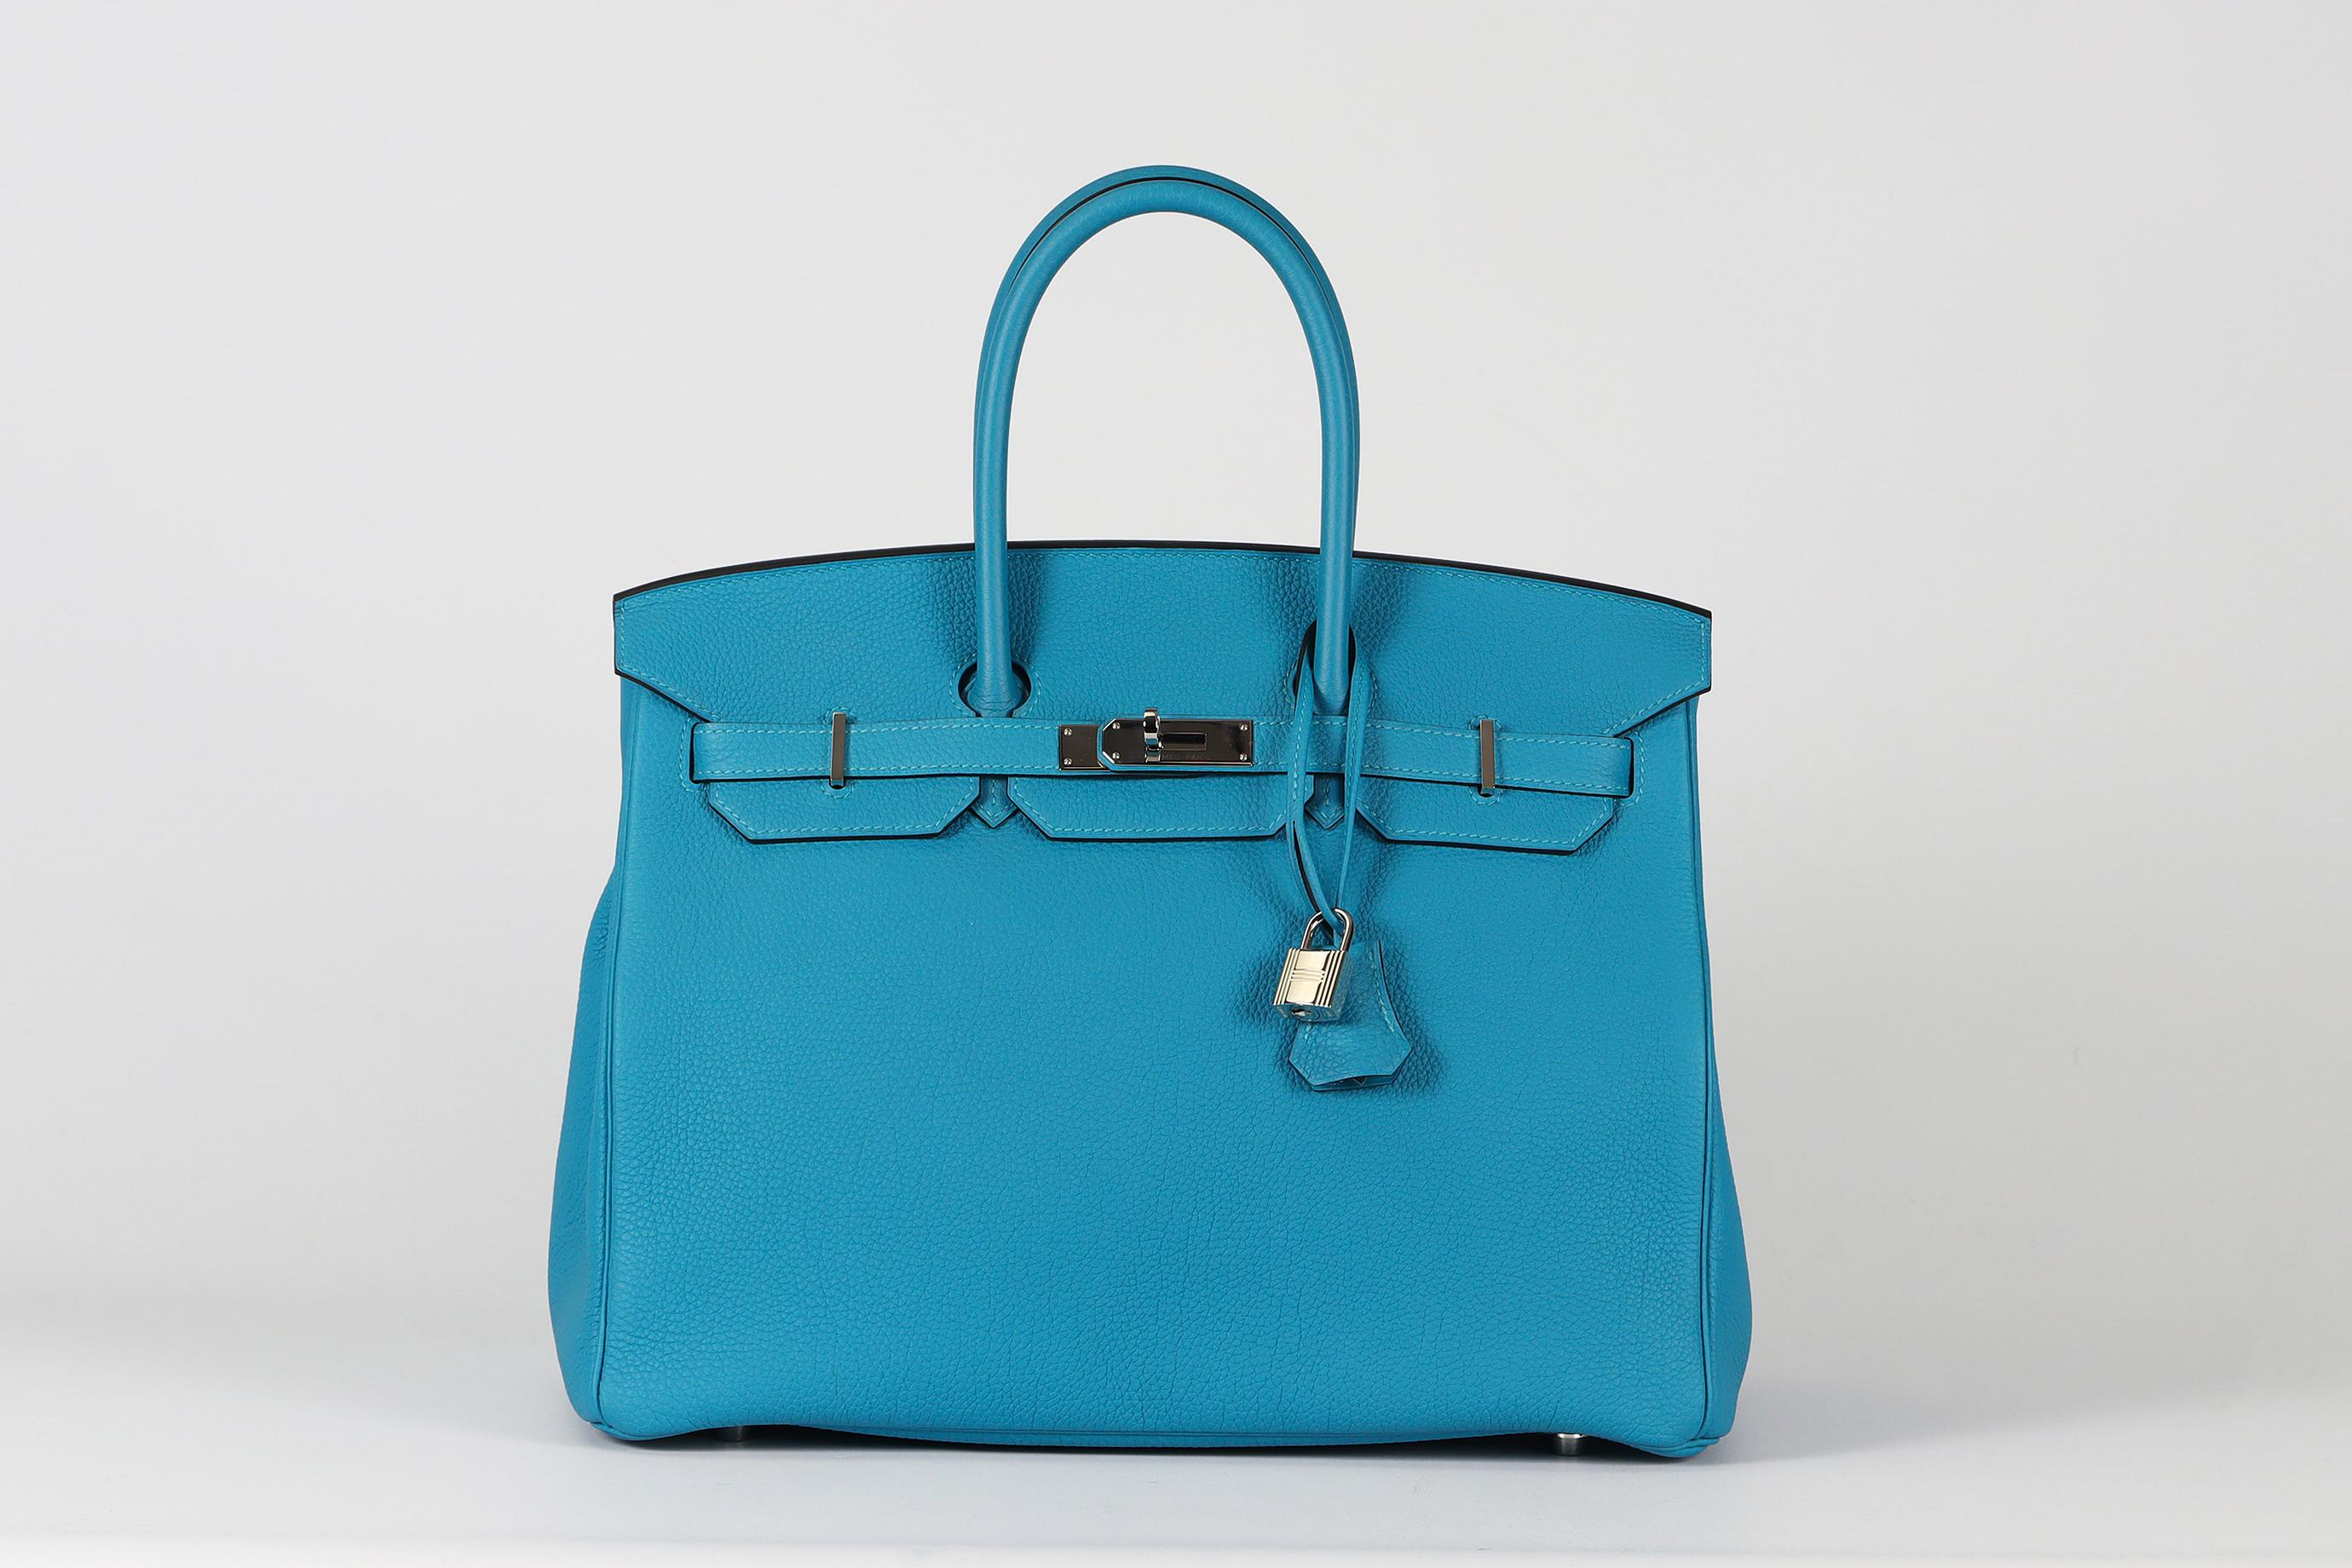 <ul>
<li>Hermès 2014 Birkin 35Cm Togo Leather Bag.</li>
<li>Bleu.</li>
<li>Fabriqué en France, ce magnifique sac à main Hermès 'Birkin' 2014 a été réalisé en cuir bleu 'Togo' extérieur en 'Turquoise' avec intérieur en cuir assorti, cette pièce est